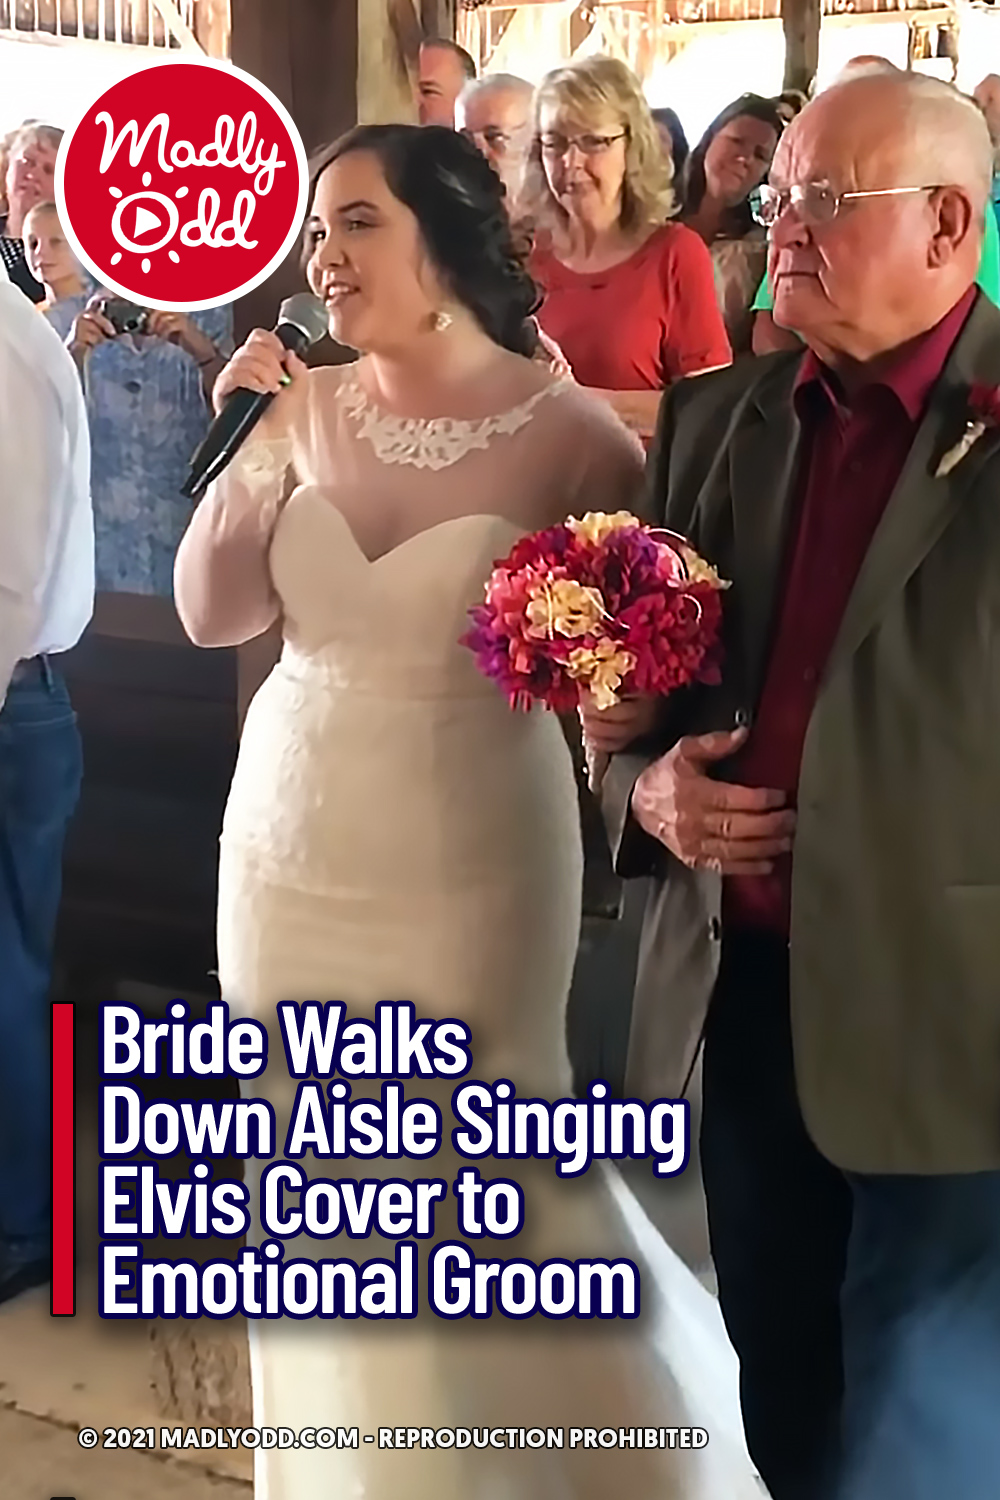 Bride Walks Down Aisle Singing Elvis Cover to Emotional Groom